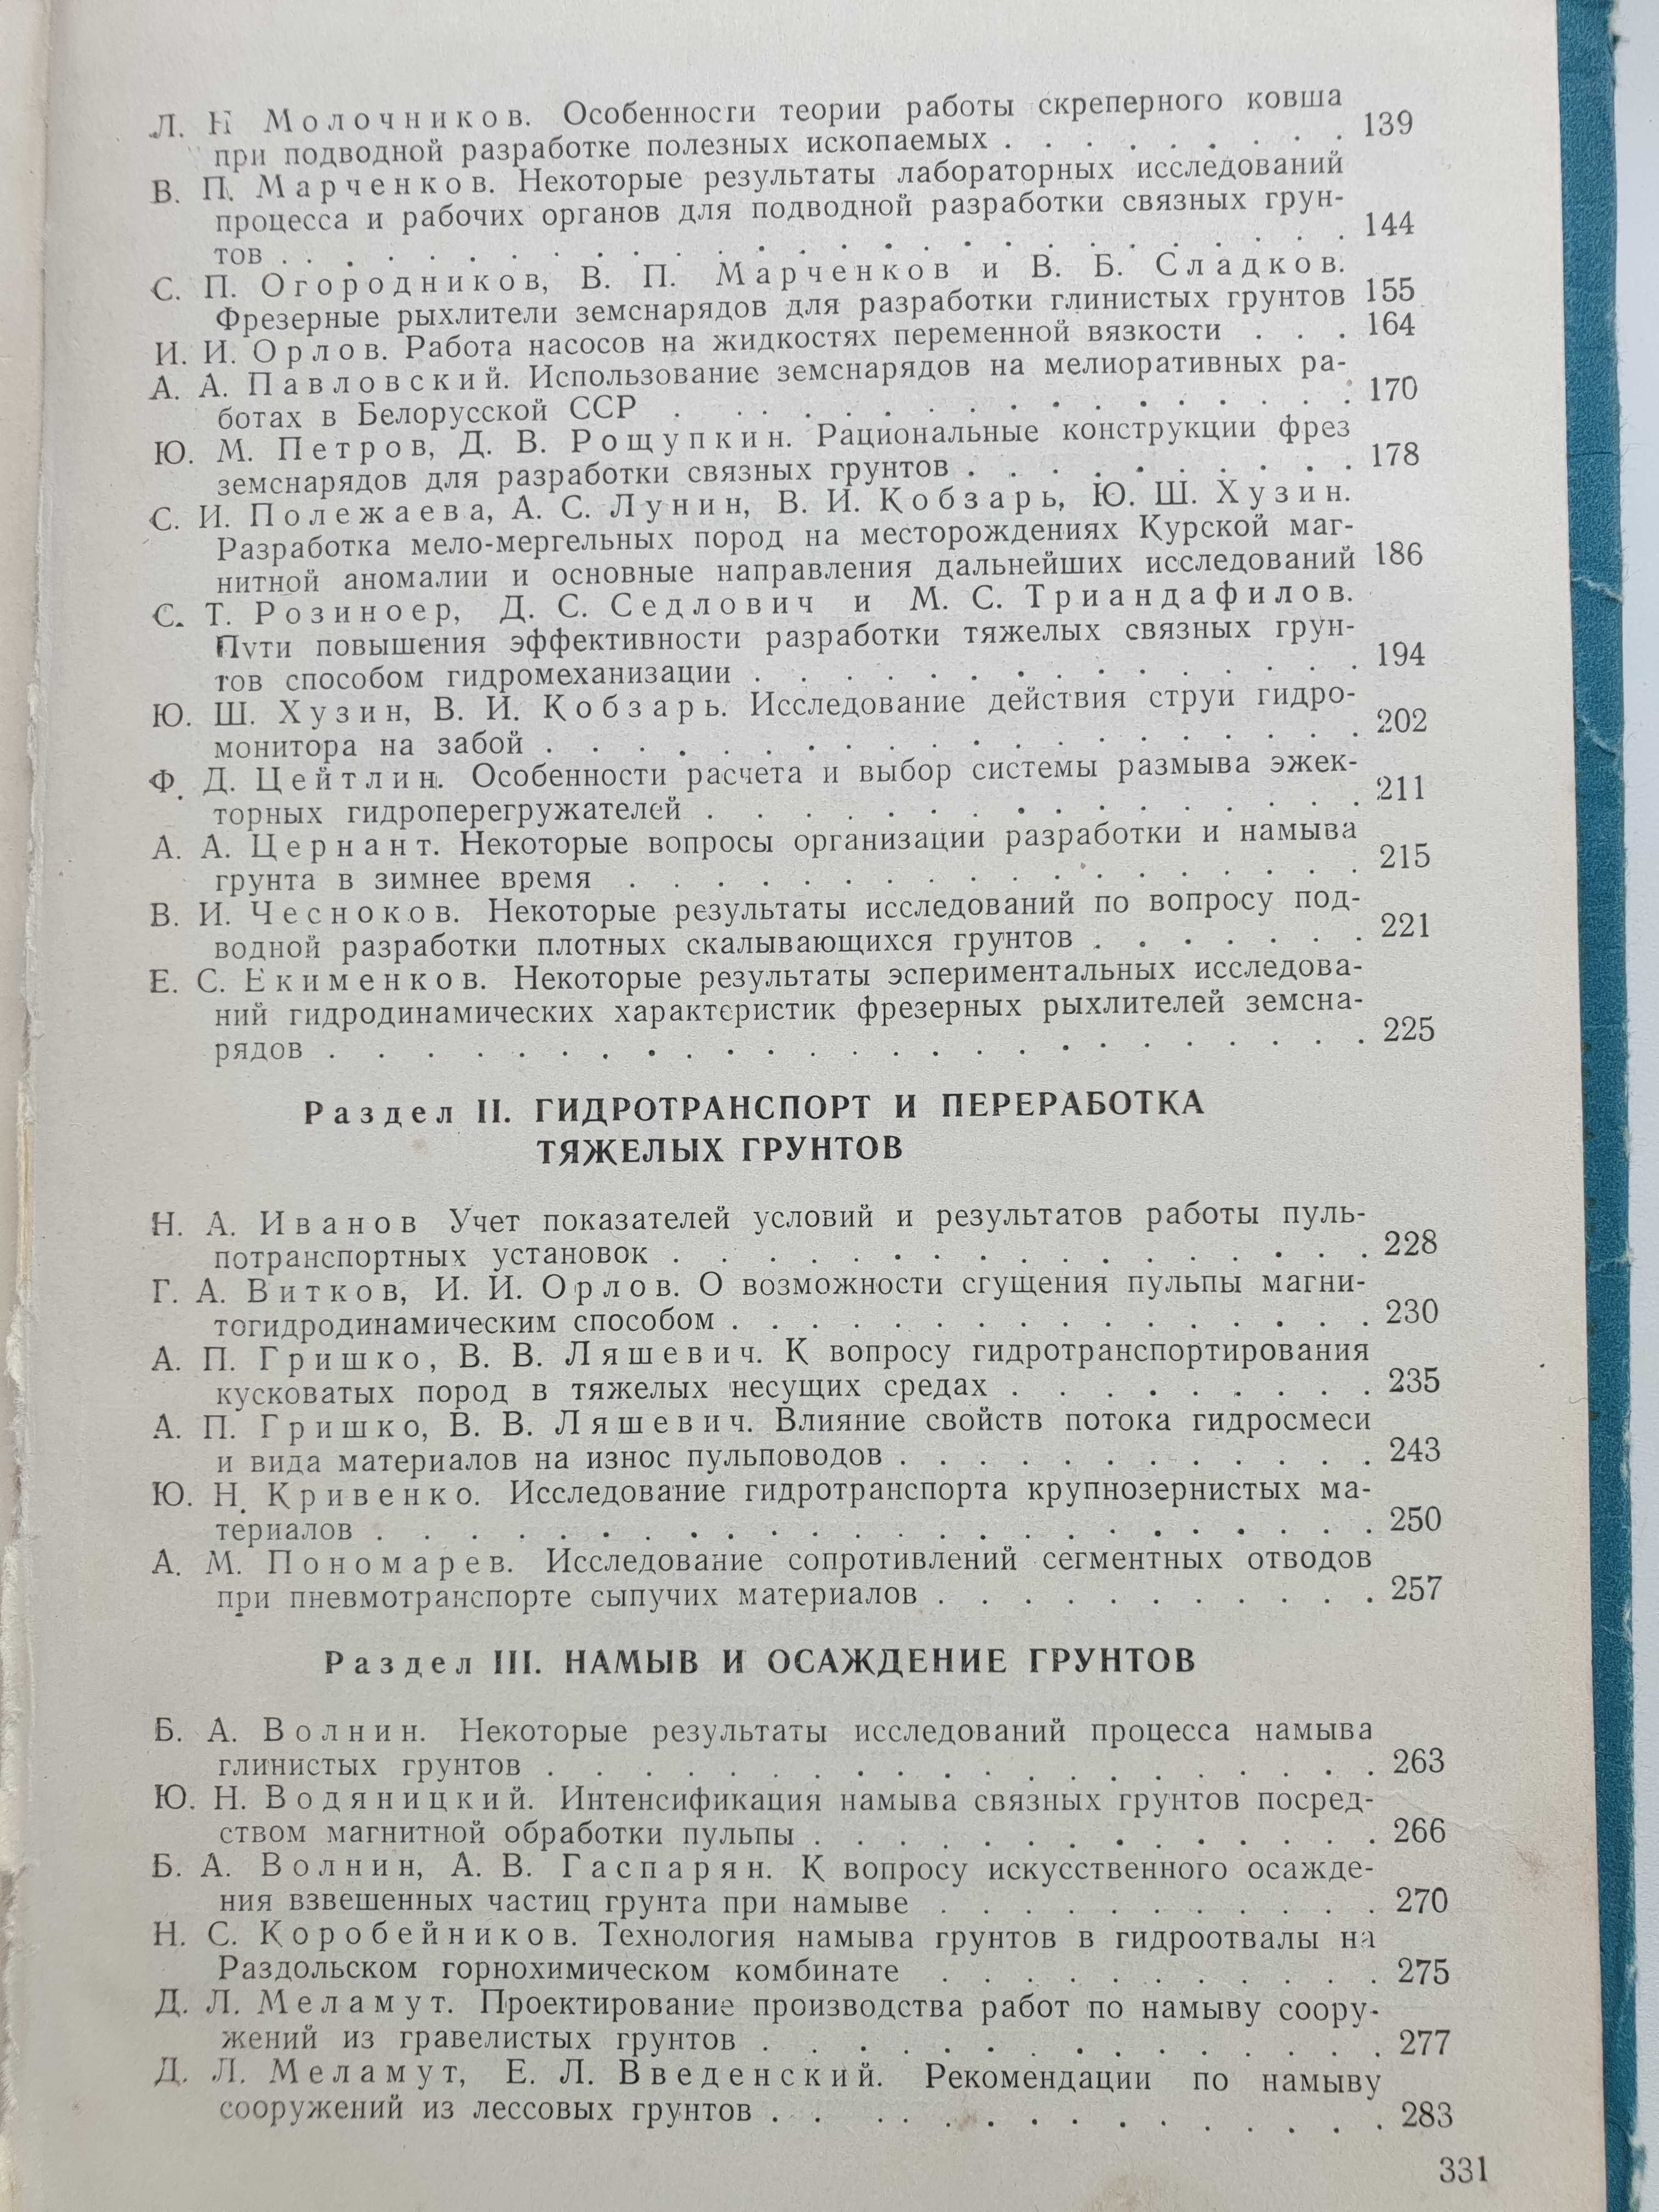 Гидромеханизация при разработке тяжелых грунтов. 1968 год.